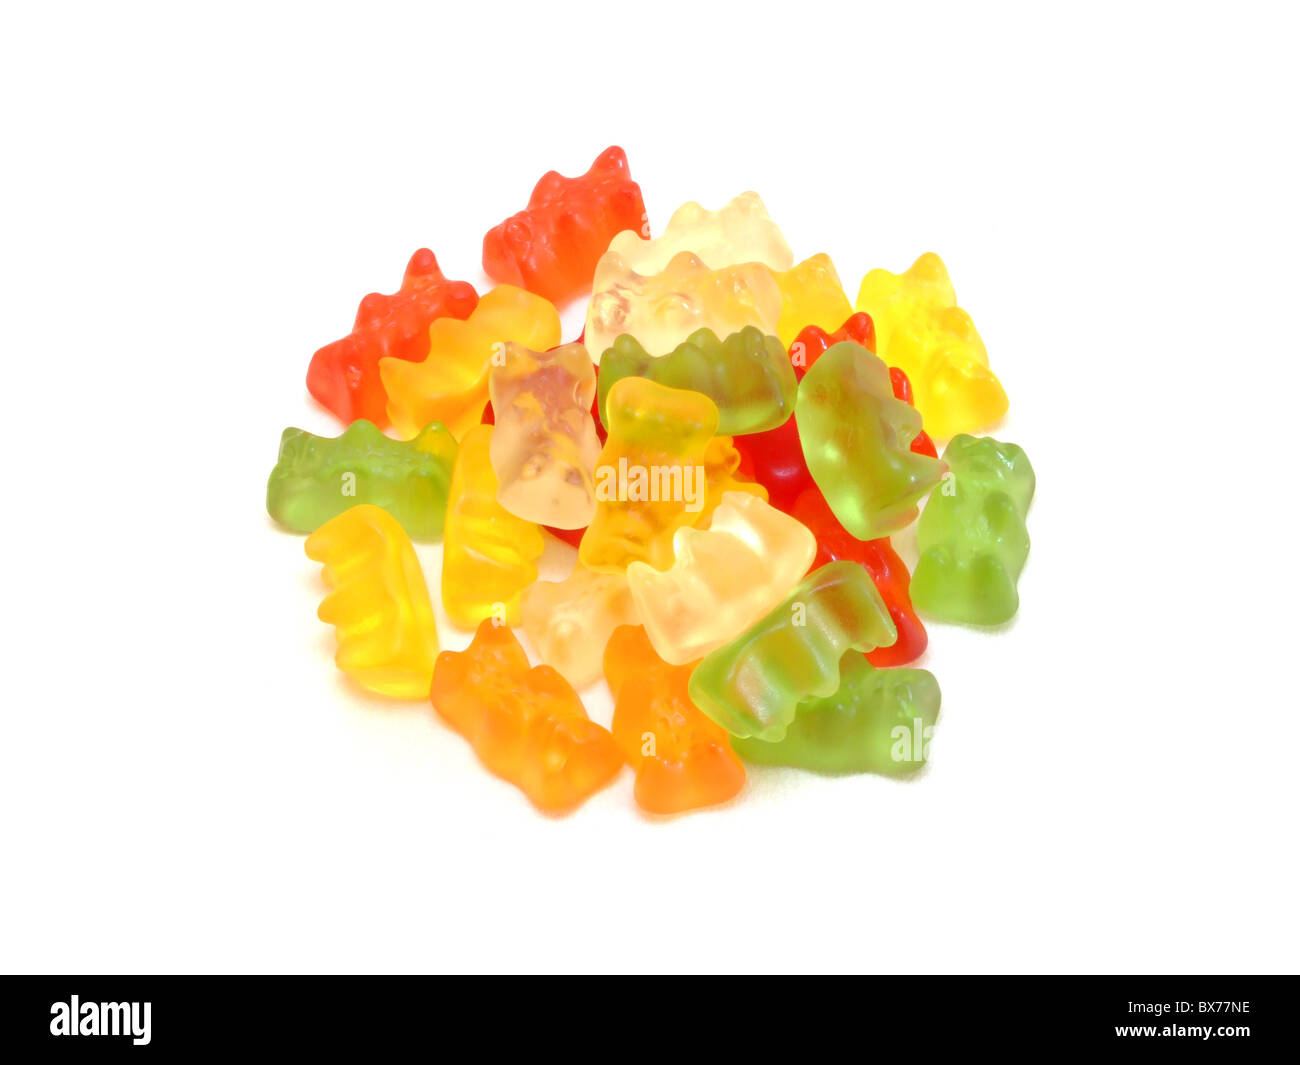 Gummibärchen / Gummy bears Banque D'Images